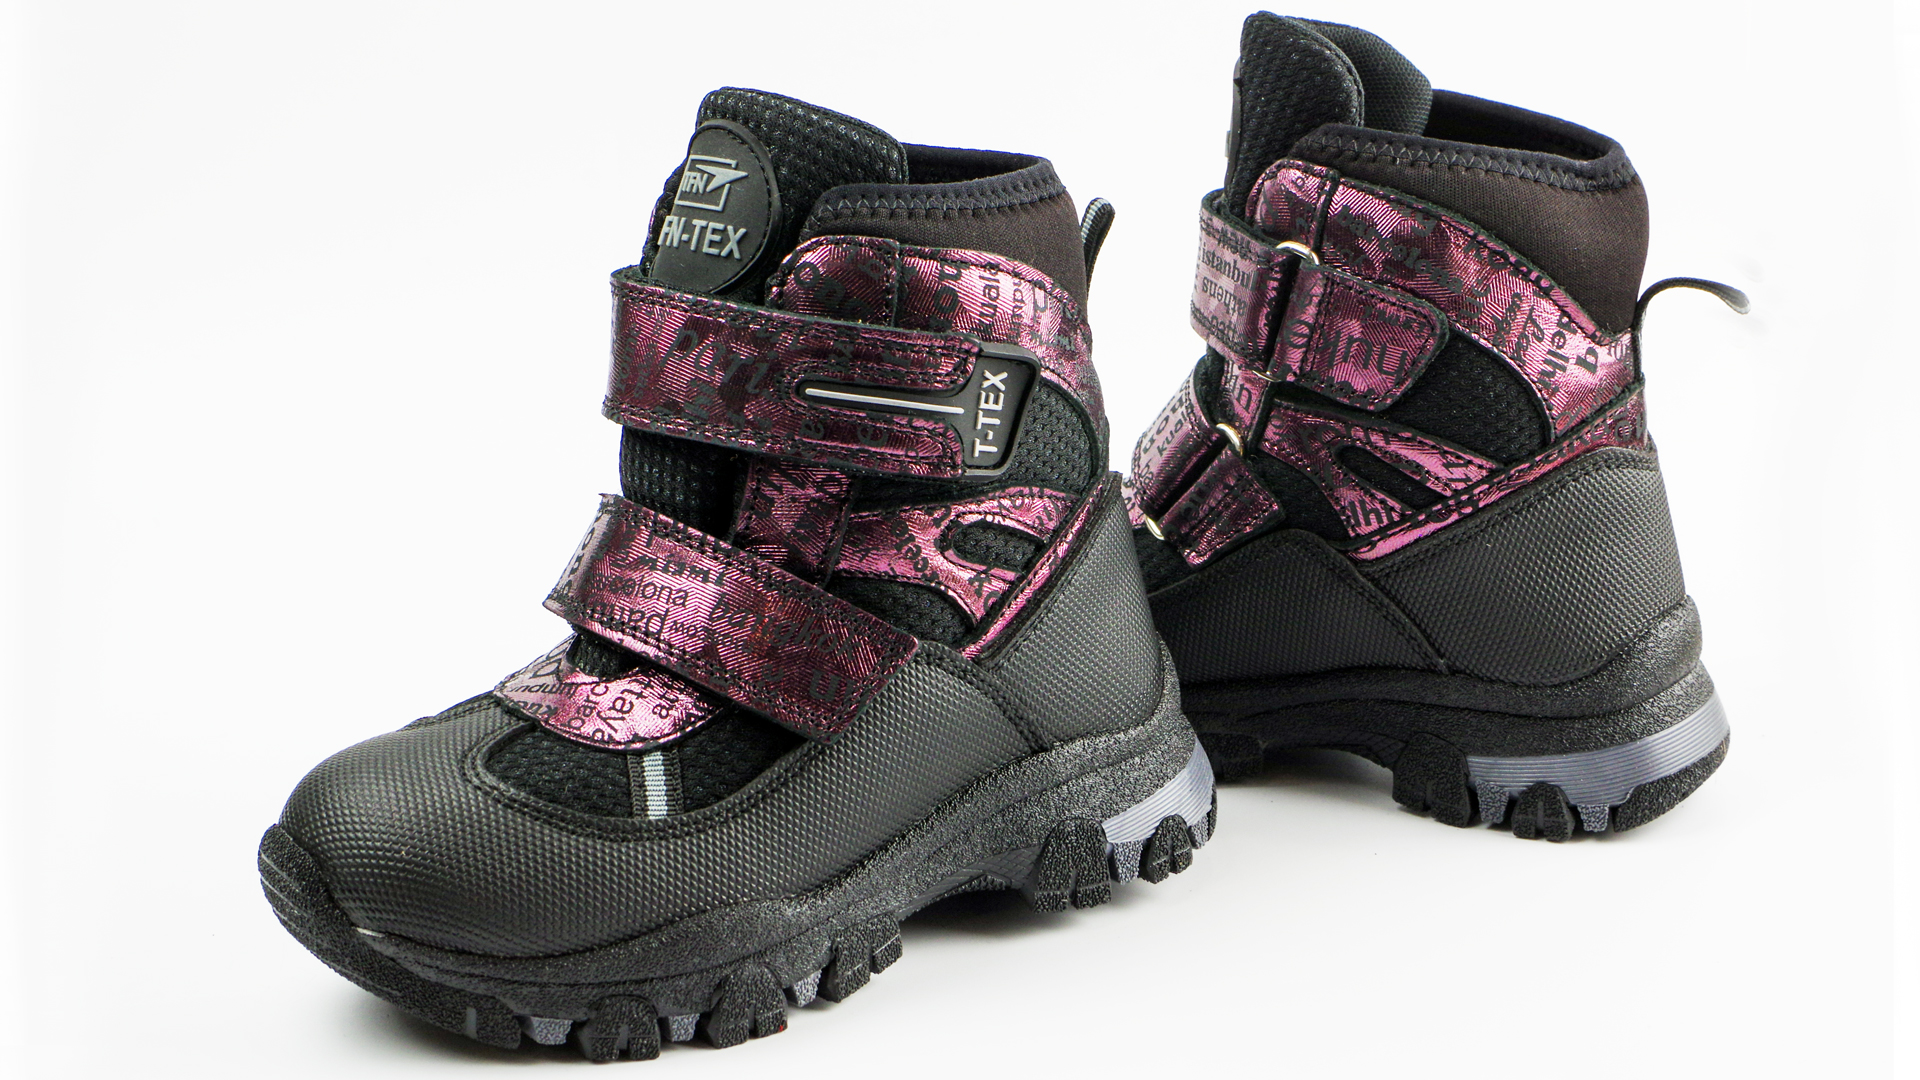 Зимові мембранні черевики (2151) для дівчинки, матеріал Мембрана, Чорний колір, 26-30 розміри – Sole Kids. Фото 3